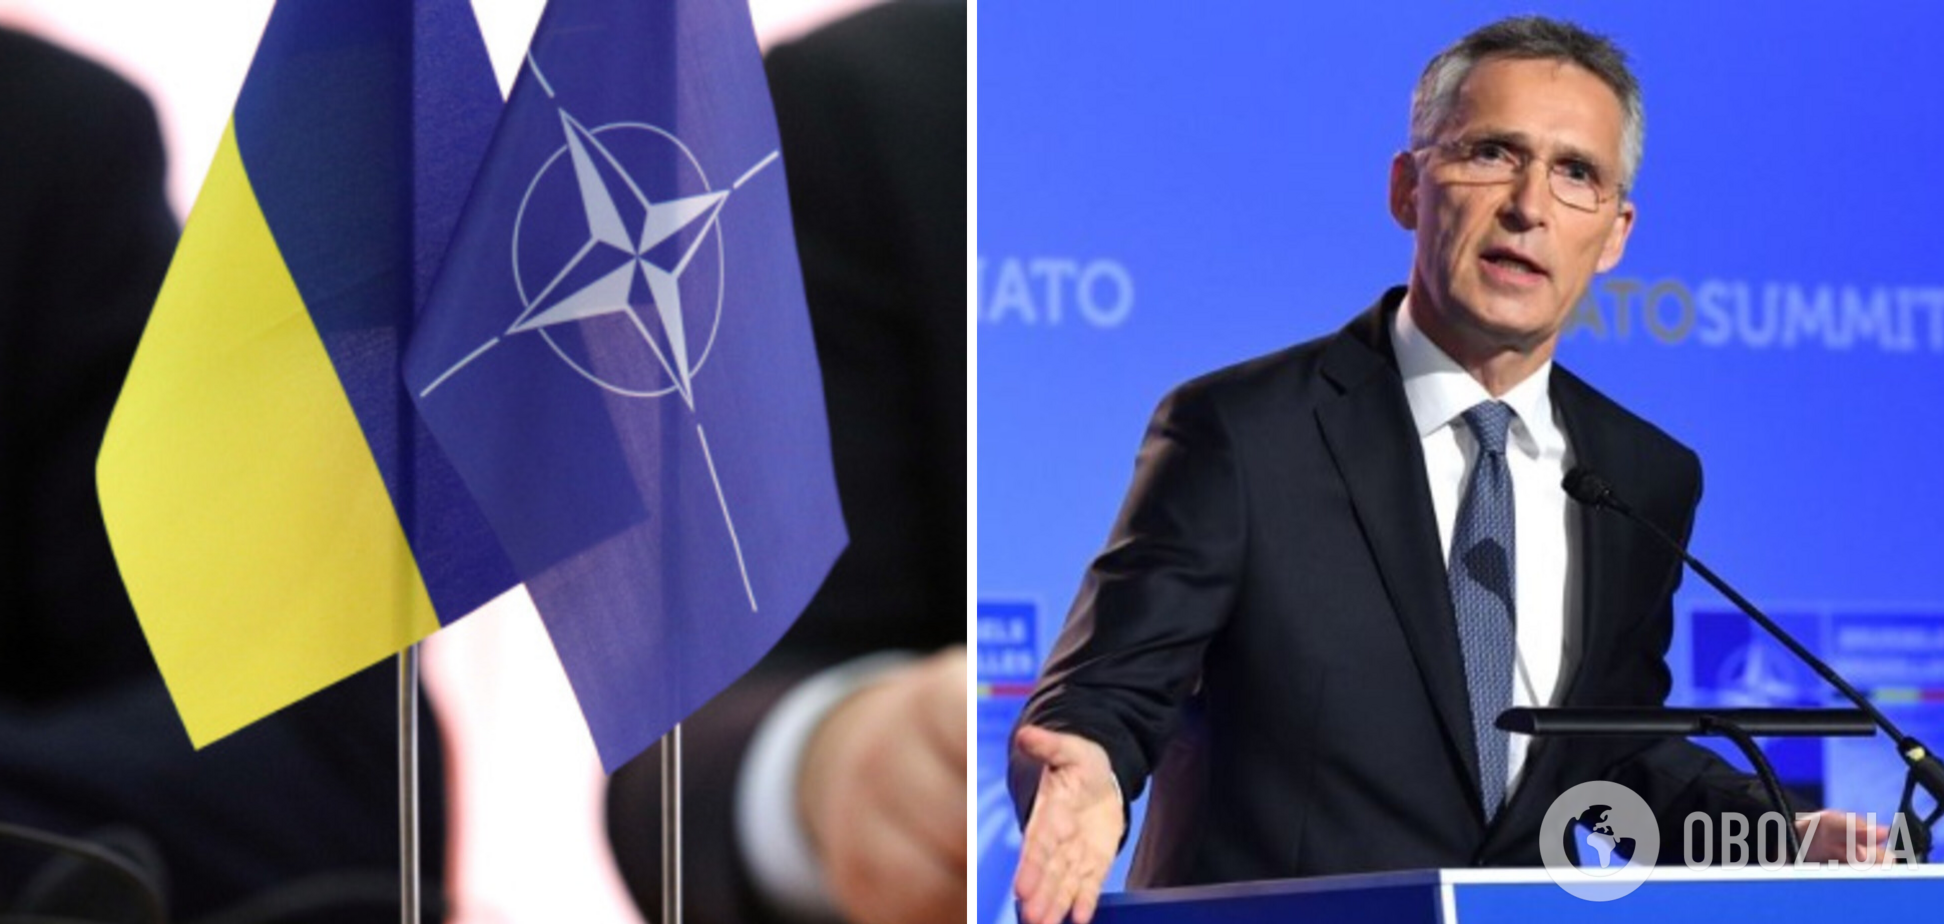 Війни не уникнути? НАТО активно готується до протистояння з Росією. Що вже зроблено та планується, як це допоможе Україні